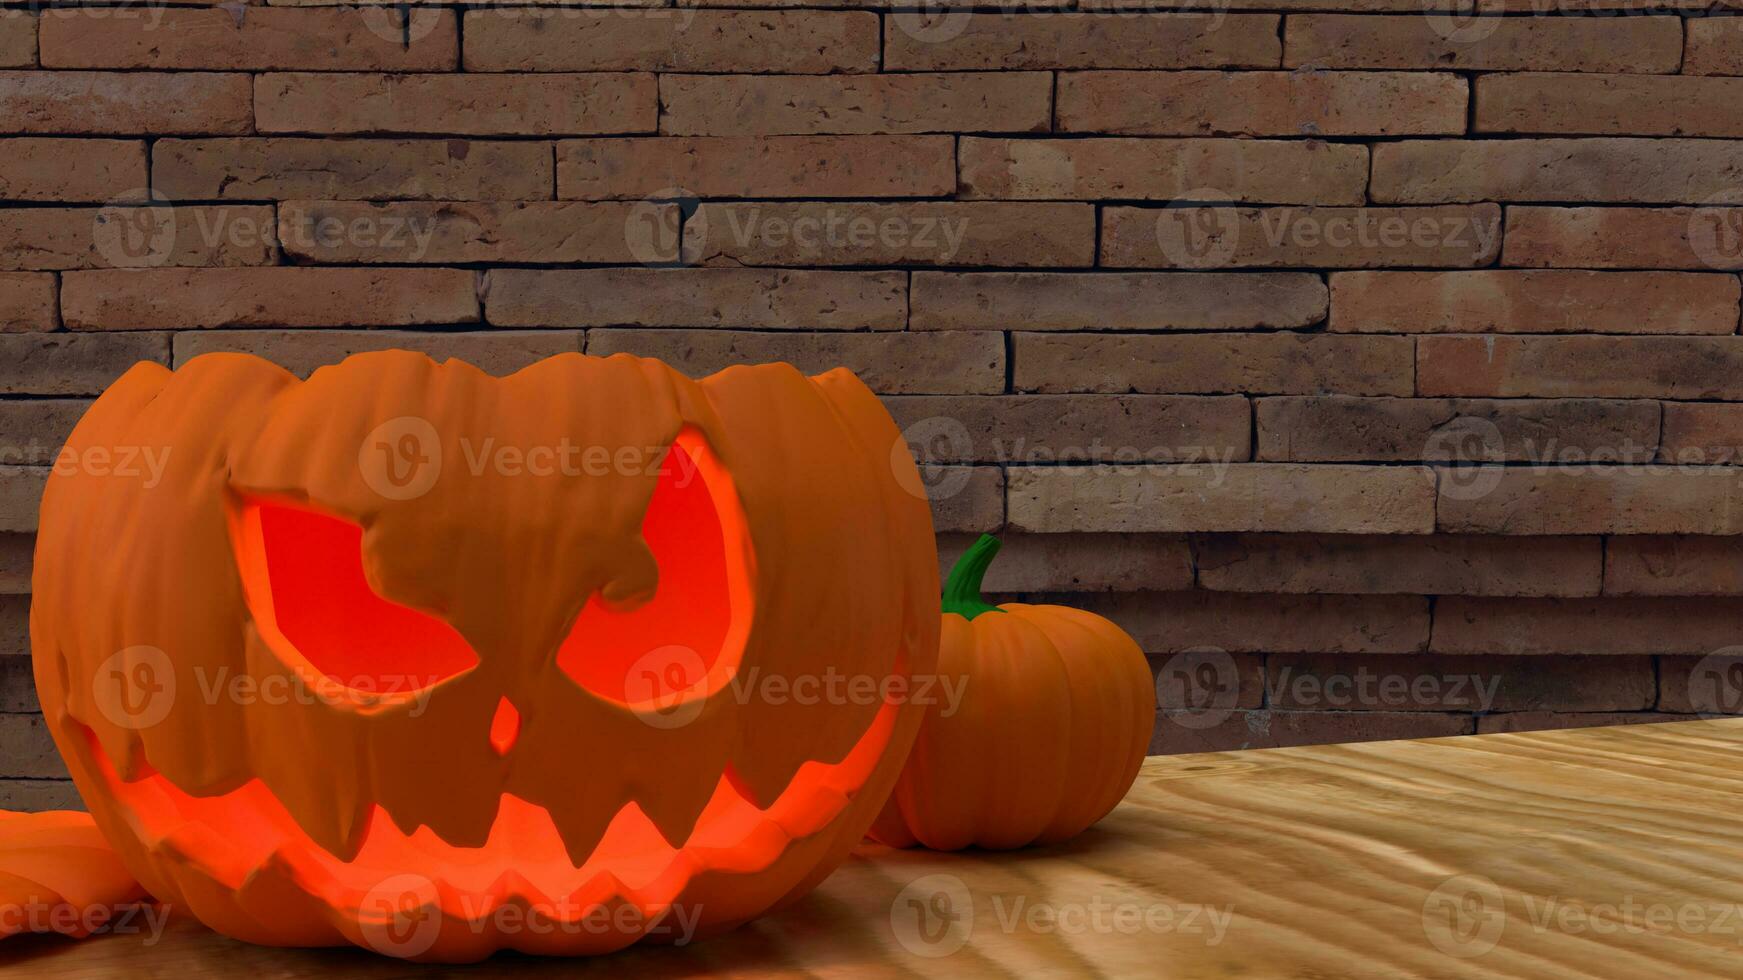 de jack O lantaarn pompoen voor halloween inhoud 3d renderen foto